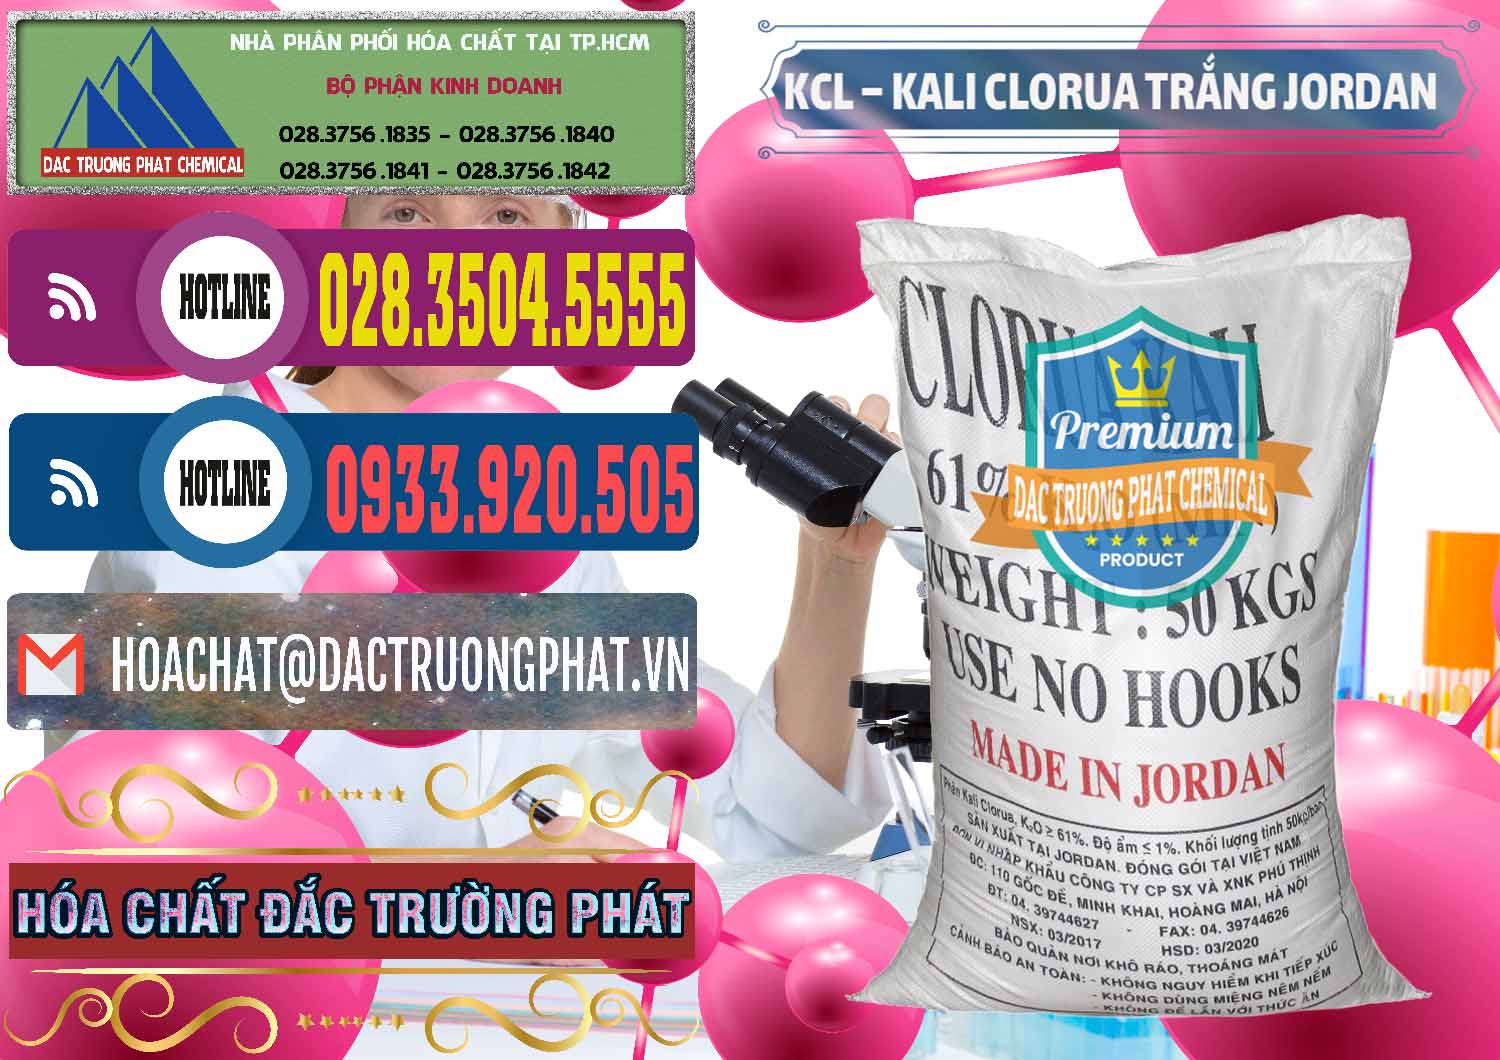 Cty bán _ cung ứng KCL – Kali Clorua Trắng Jordan - 0088 - Chuyên nhập khẩu ( cung cấp ) hóa chất tại TP.HCM - muabanhoachat.com.vn